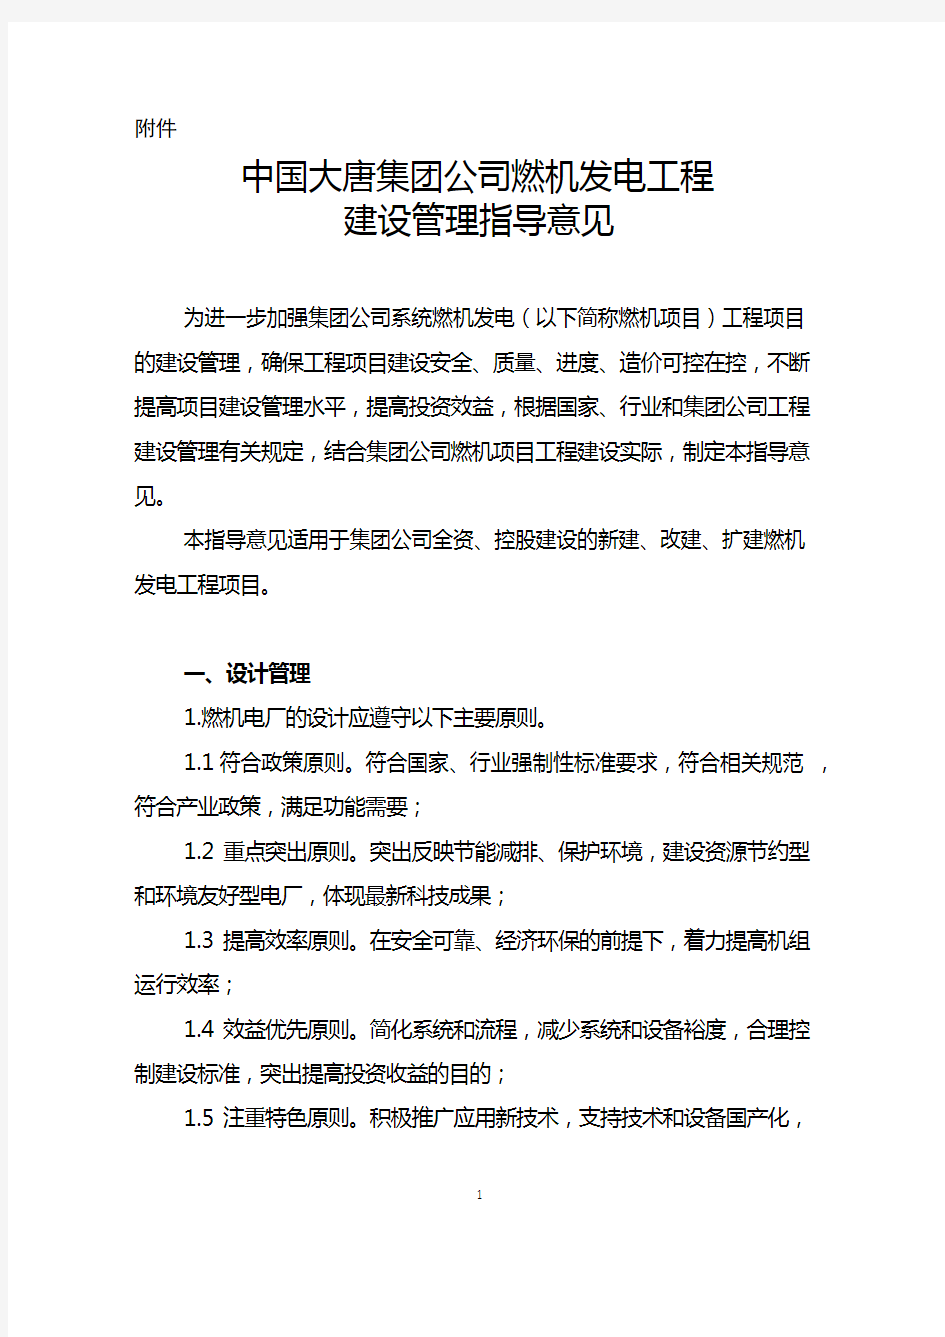 (完整word版)中国大唐集团公司燃机发电工程建设管理指导意见